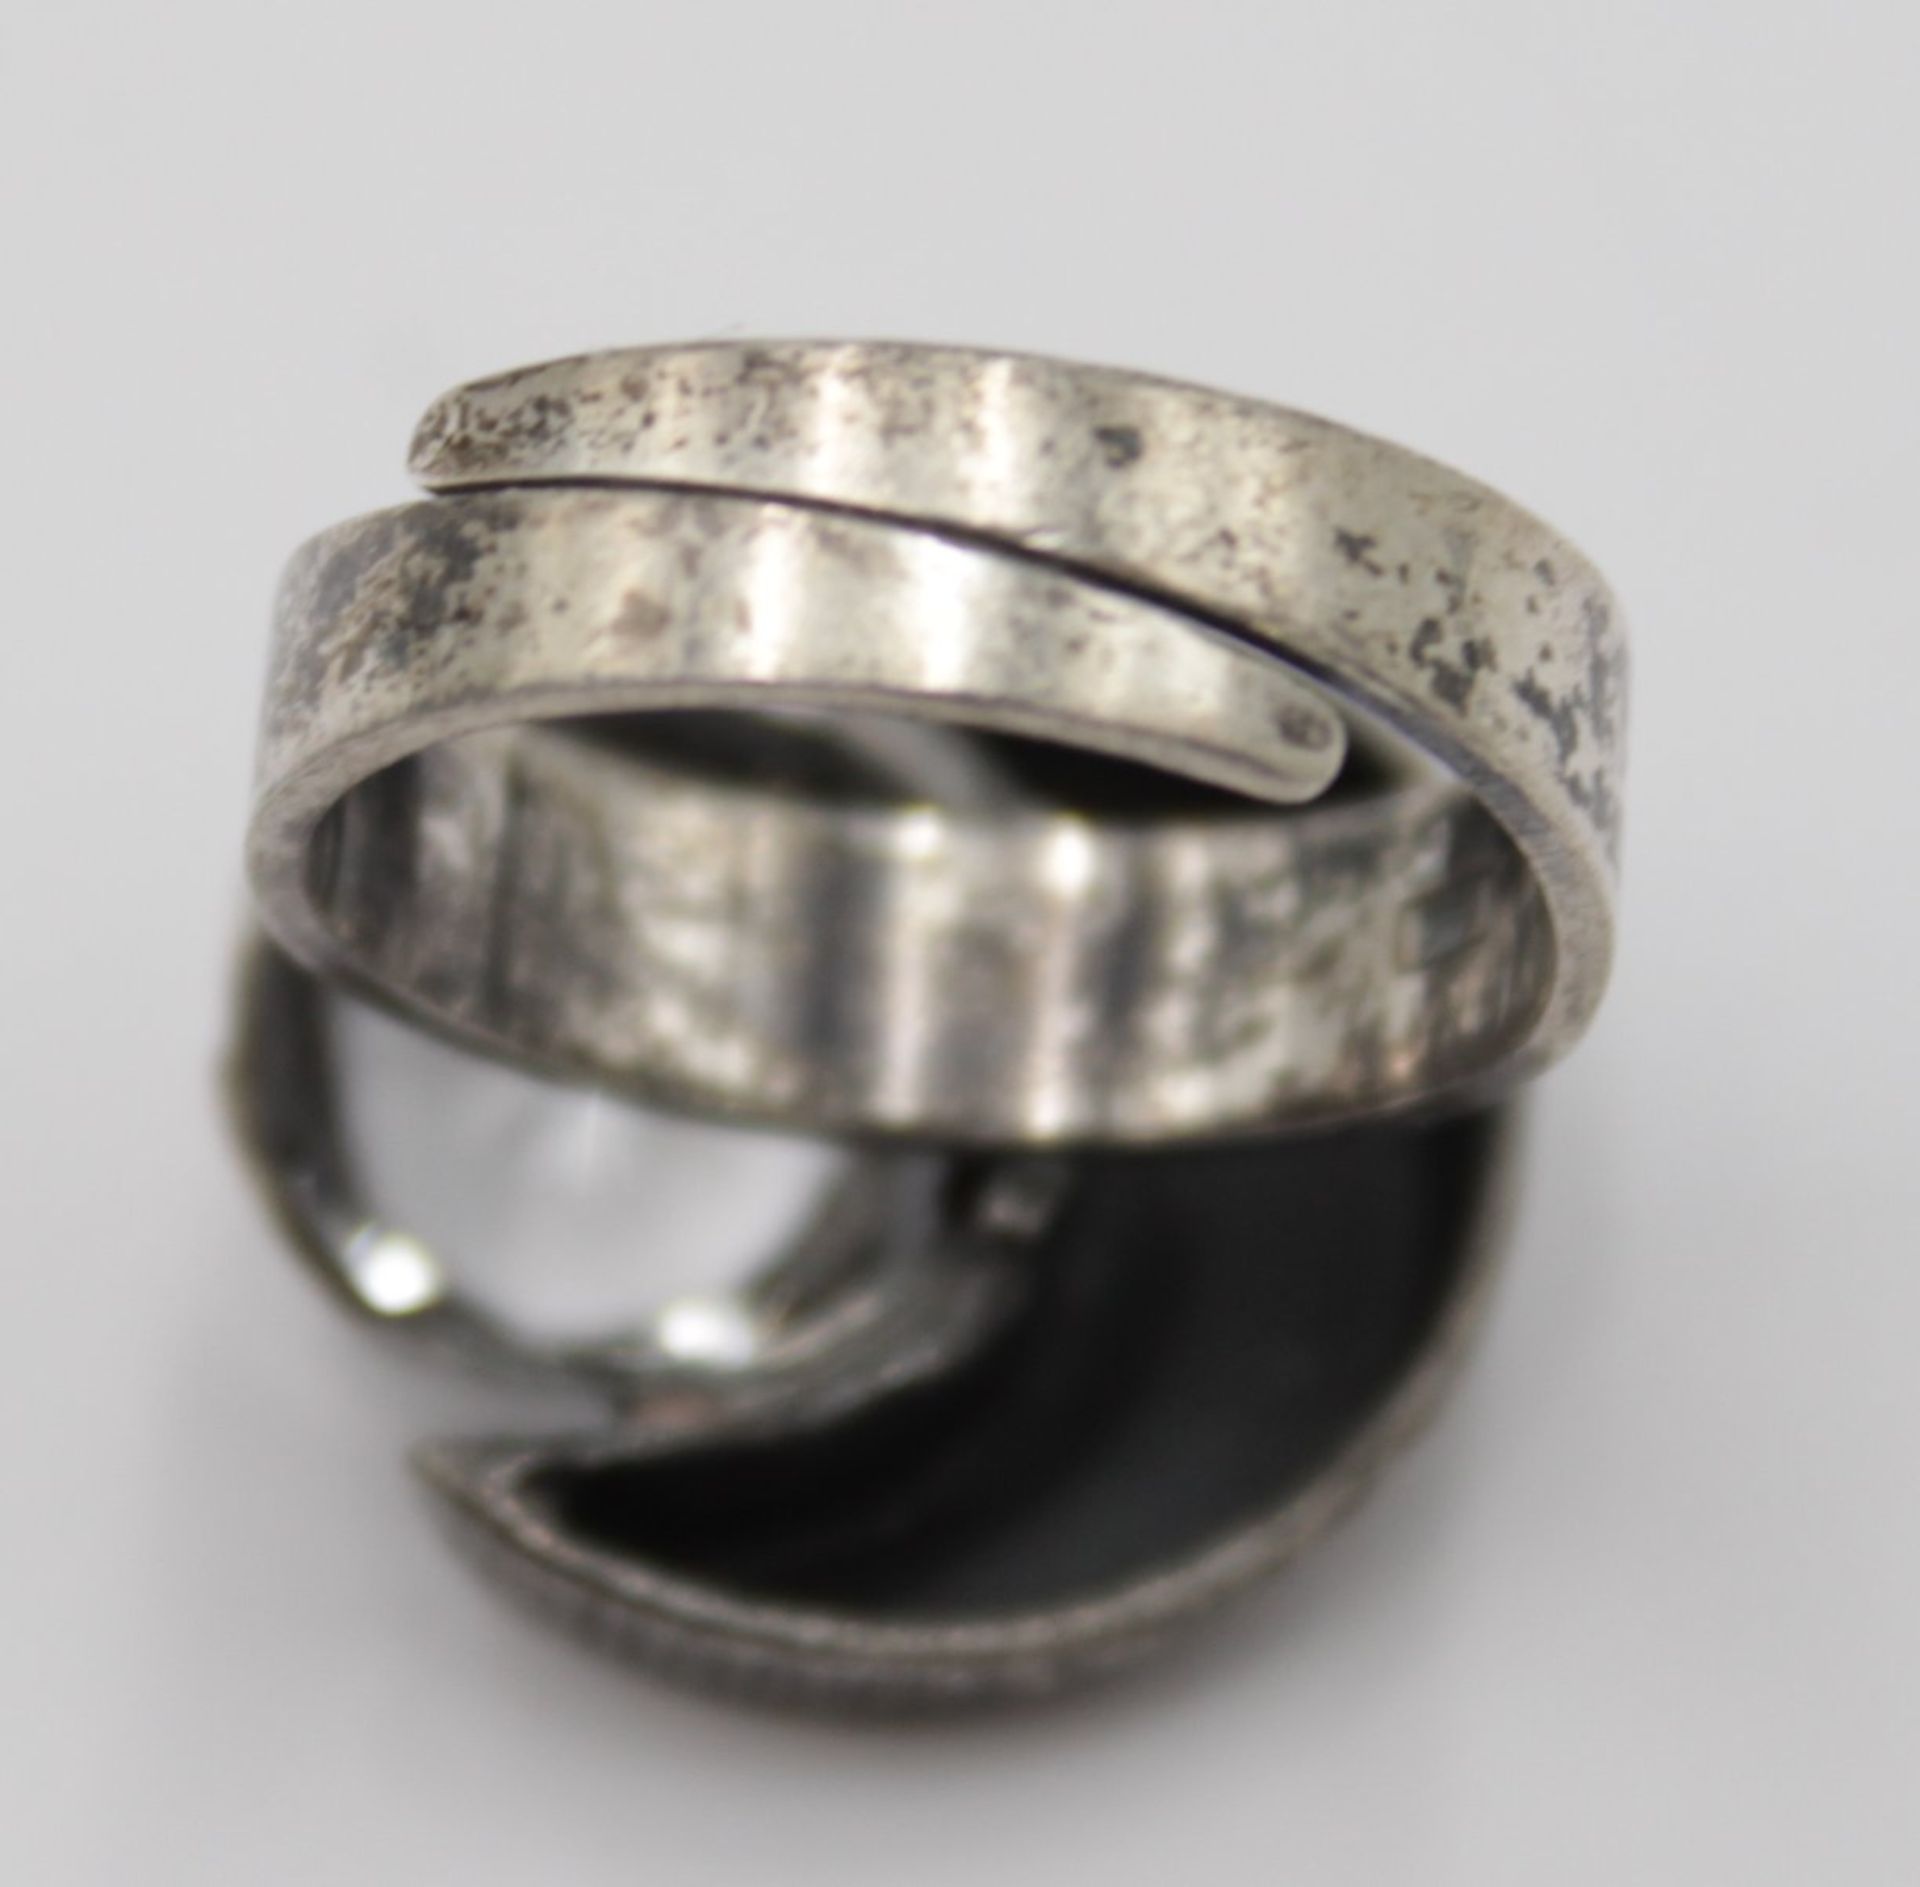 Set, 925er Silber, Ring mit offener Schiene, Anhänger, je mit klarem Stein, zus. 11,9gr. - Bild 5 aus 6